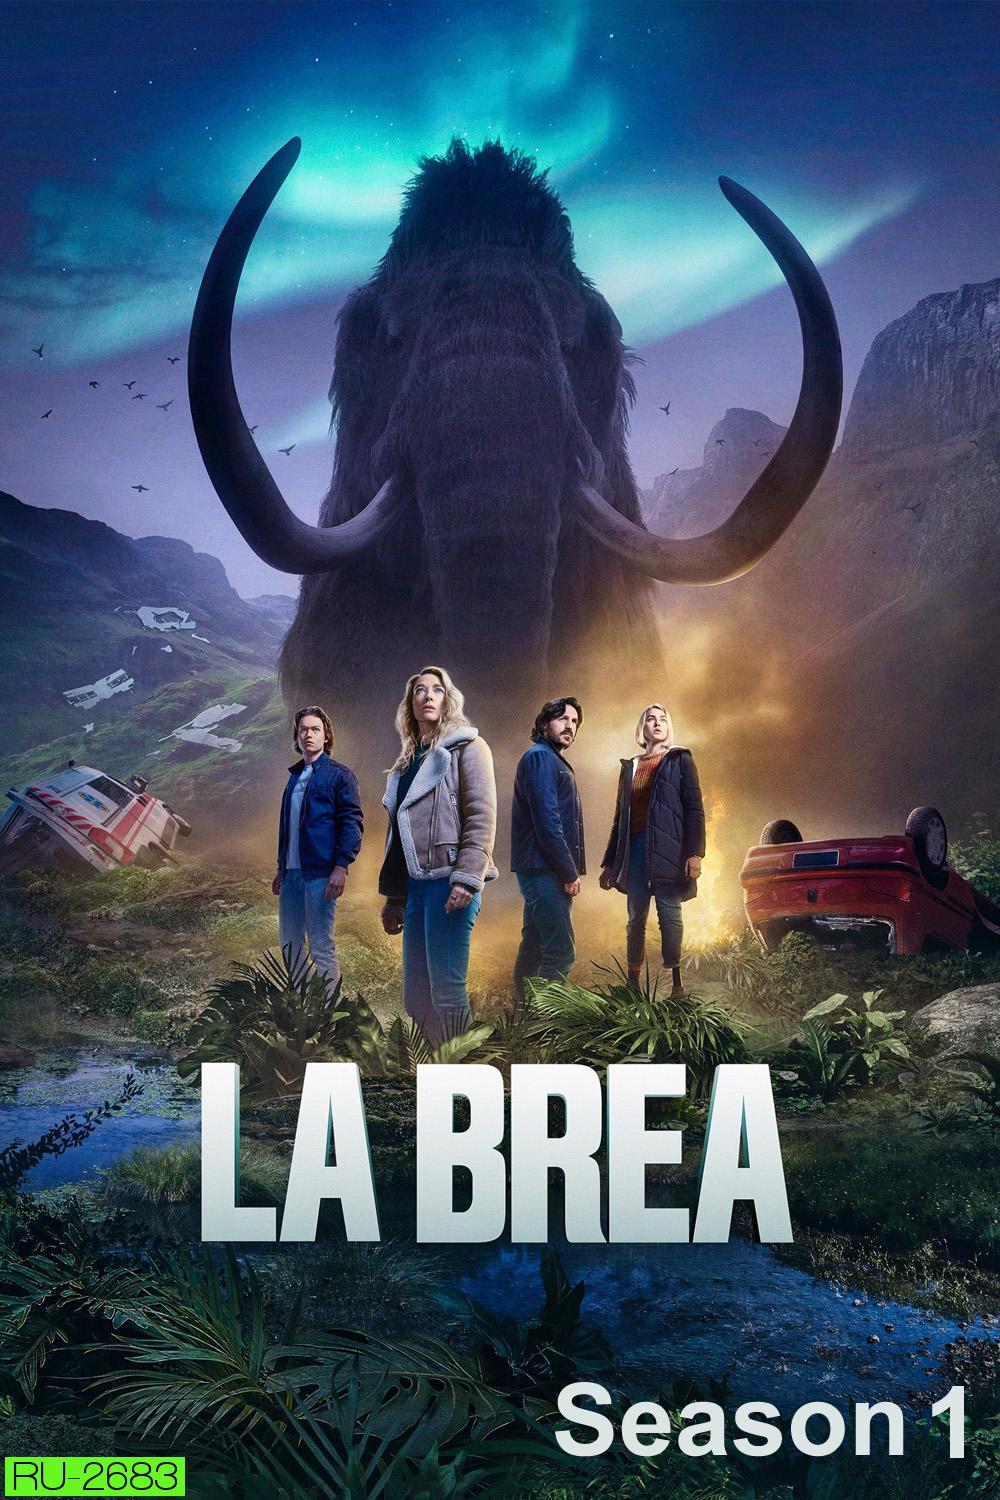 La Brea Season 1 (2021) ลาเบรีย ผจญภัยโลกดึกดำบรรพ์ (10 ตอน)